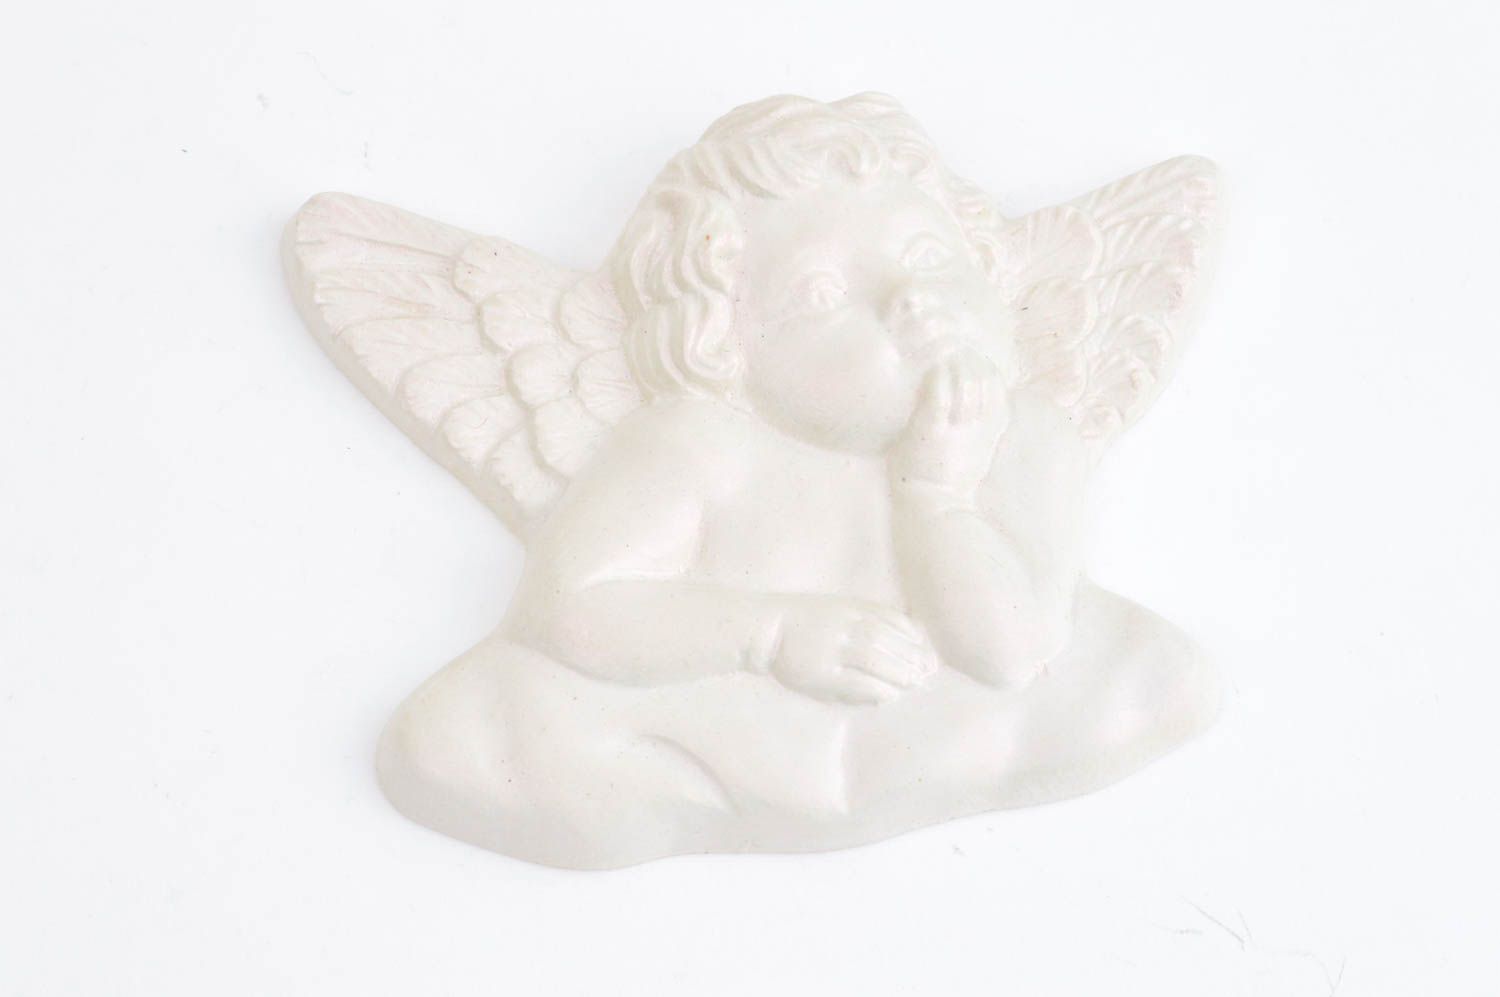 Оригинальный подарок ручной работы сувенир из гипса фигурка ангела в облаках фото 2